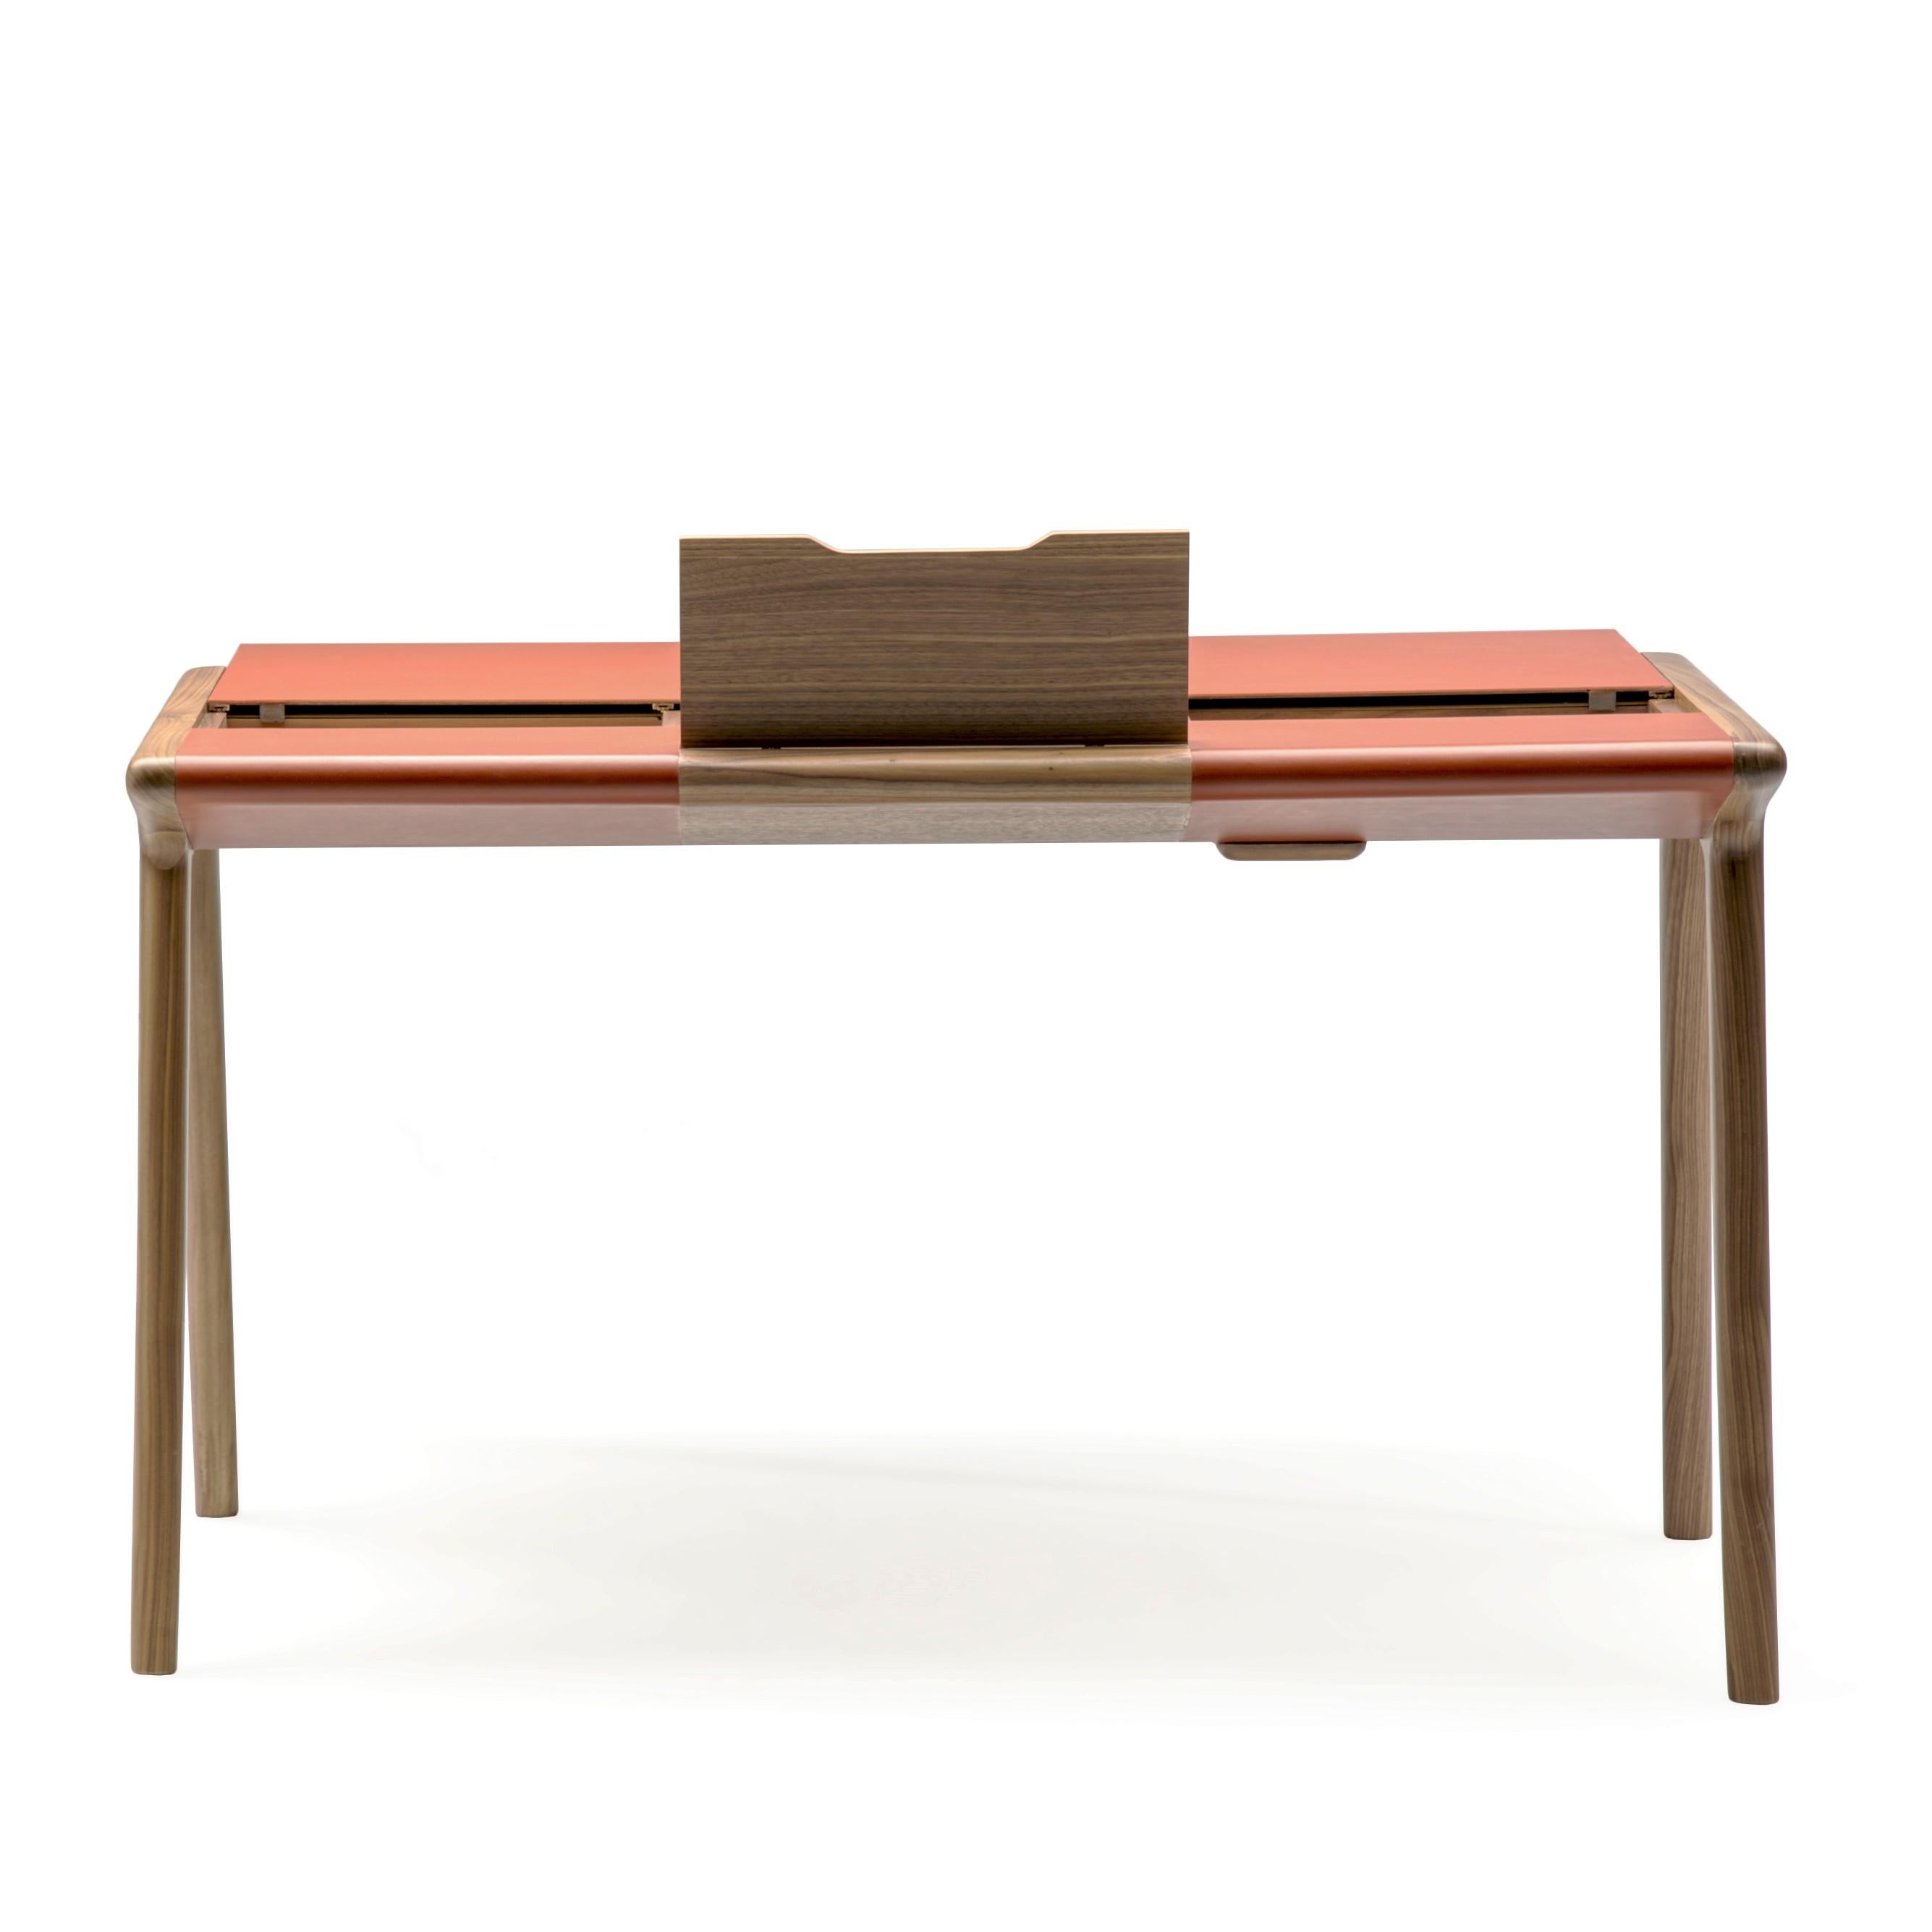 Scriba Desk In New Condition For Sale In GRUMO APPULA (BA), IT